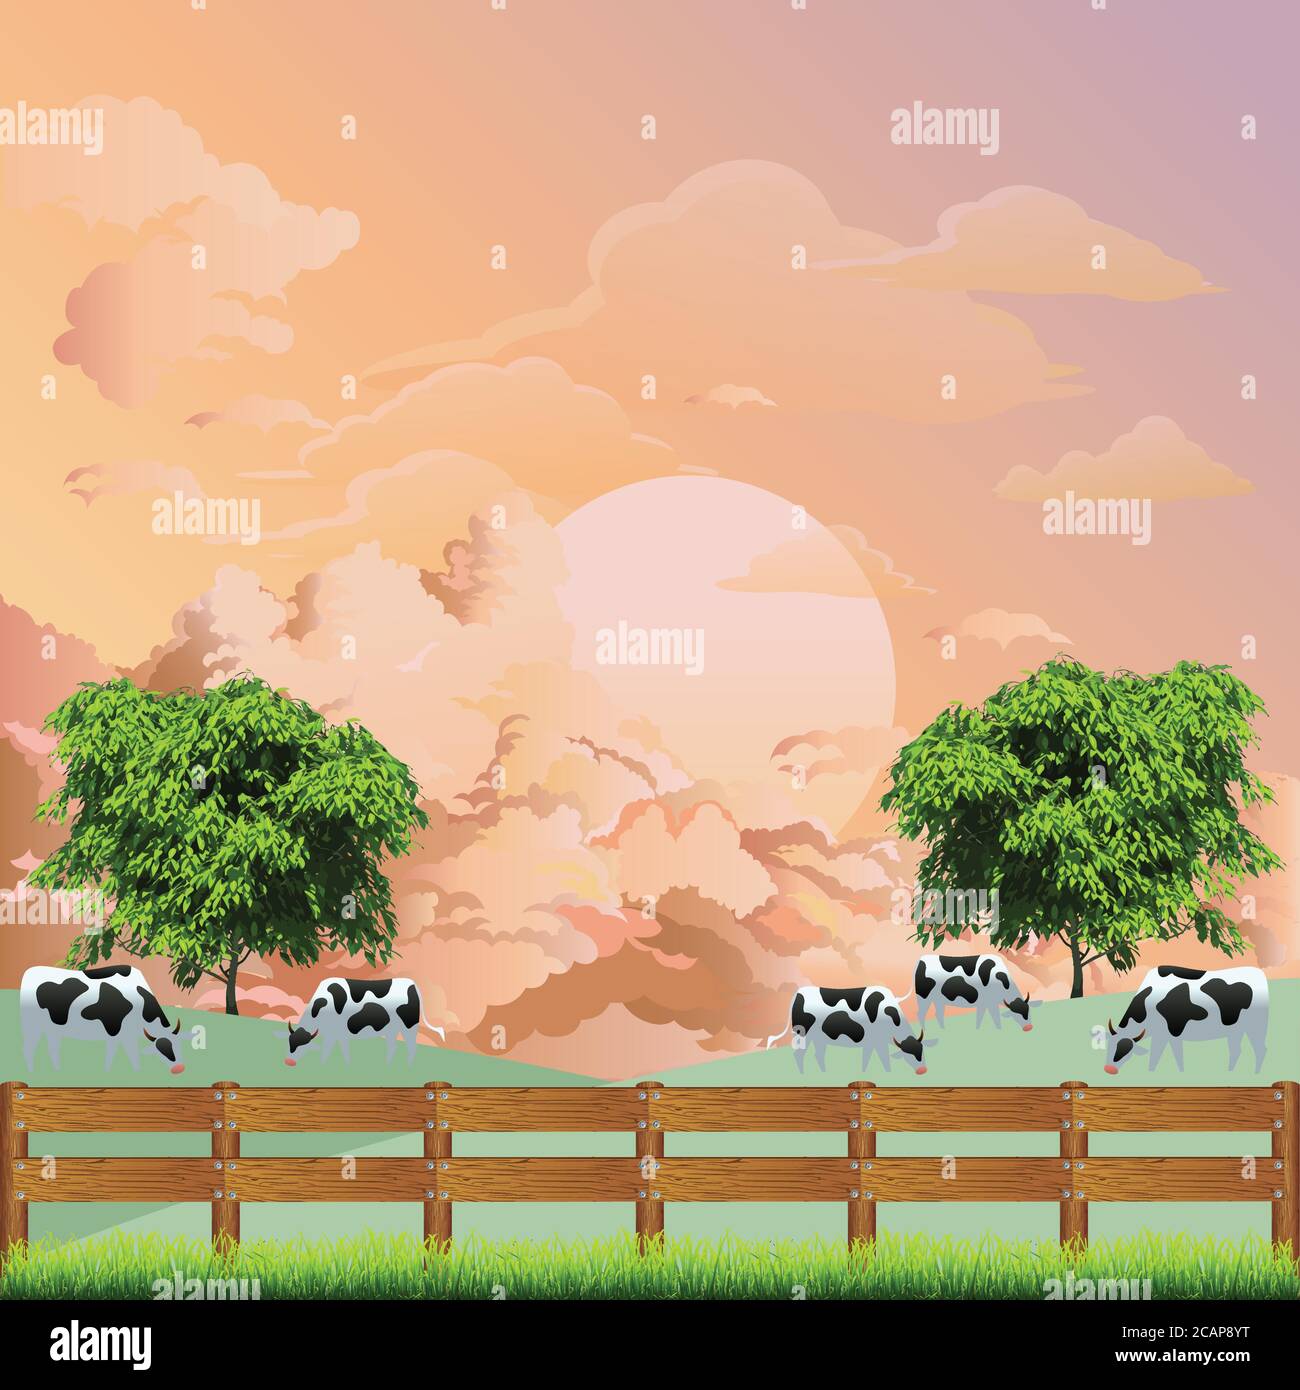 Pintoresca escena rural con una manada de vacas pastando en el campo de pasto contra un amanecer o cielo al atardecer Ilustración del Vector